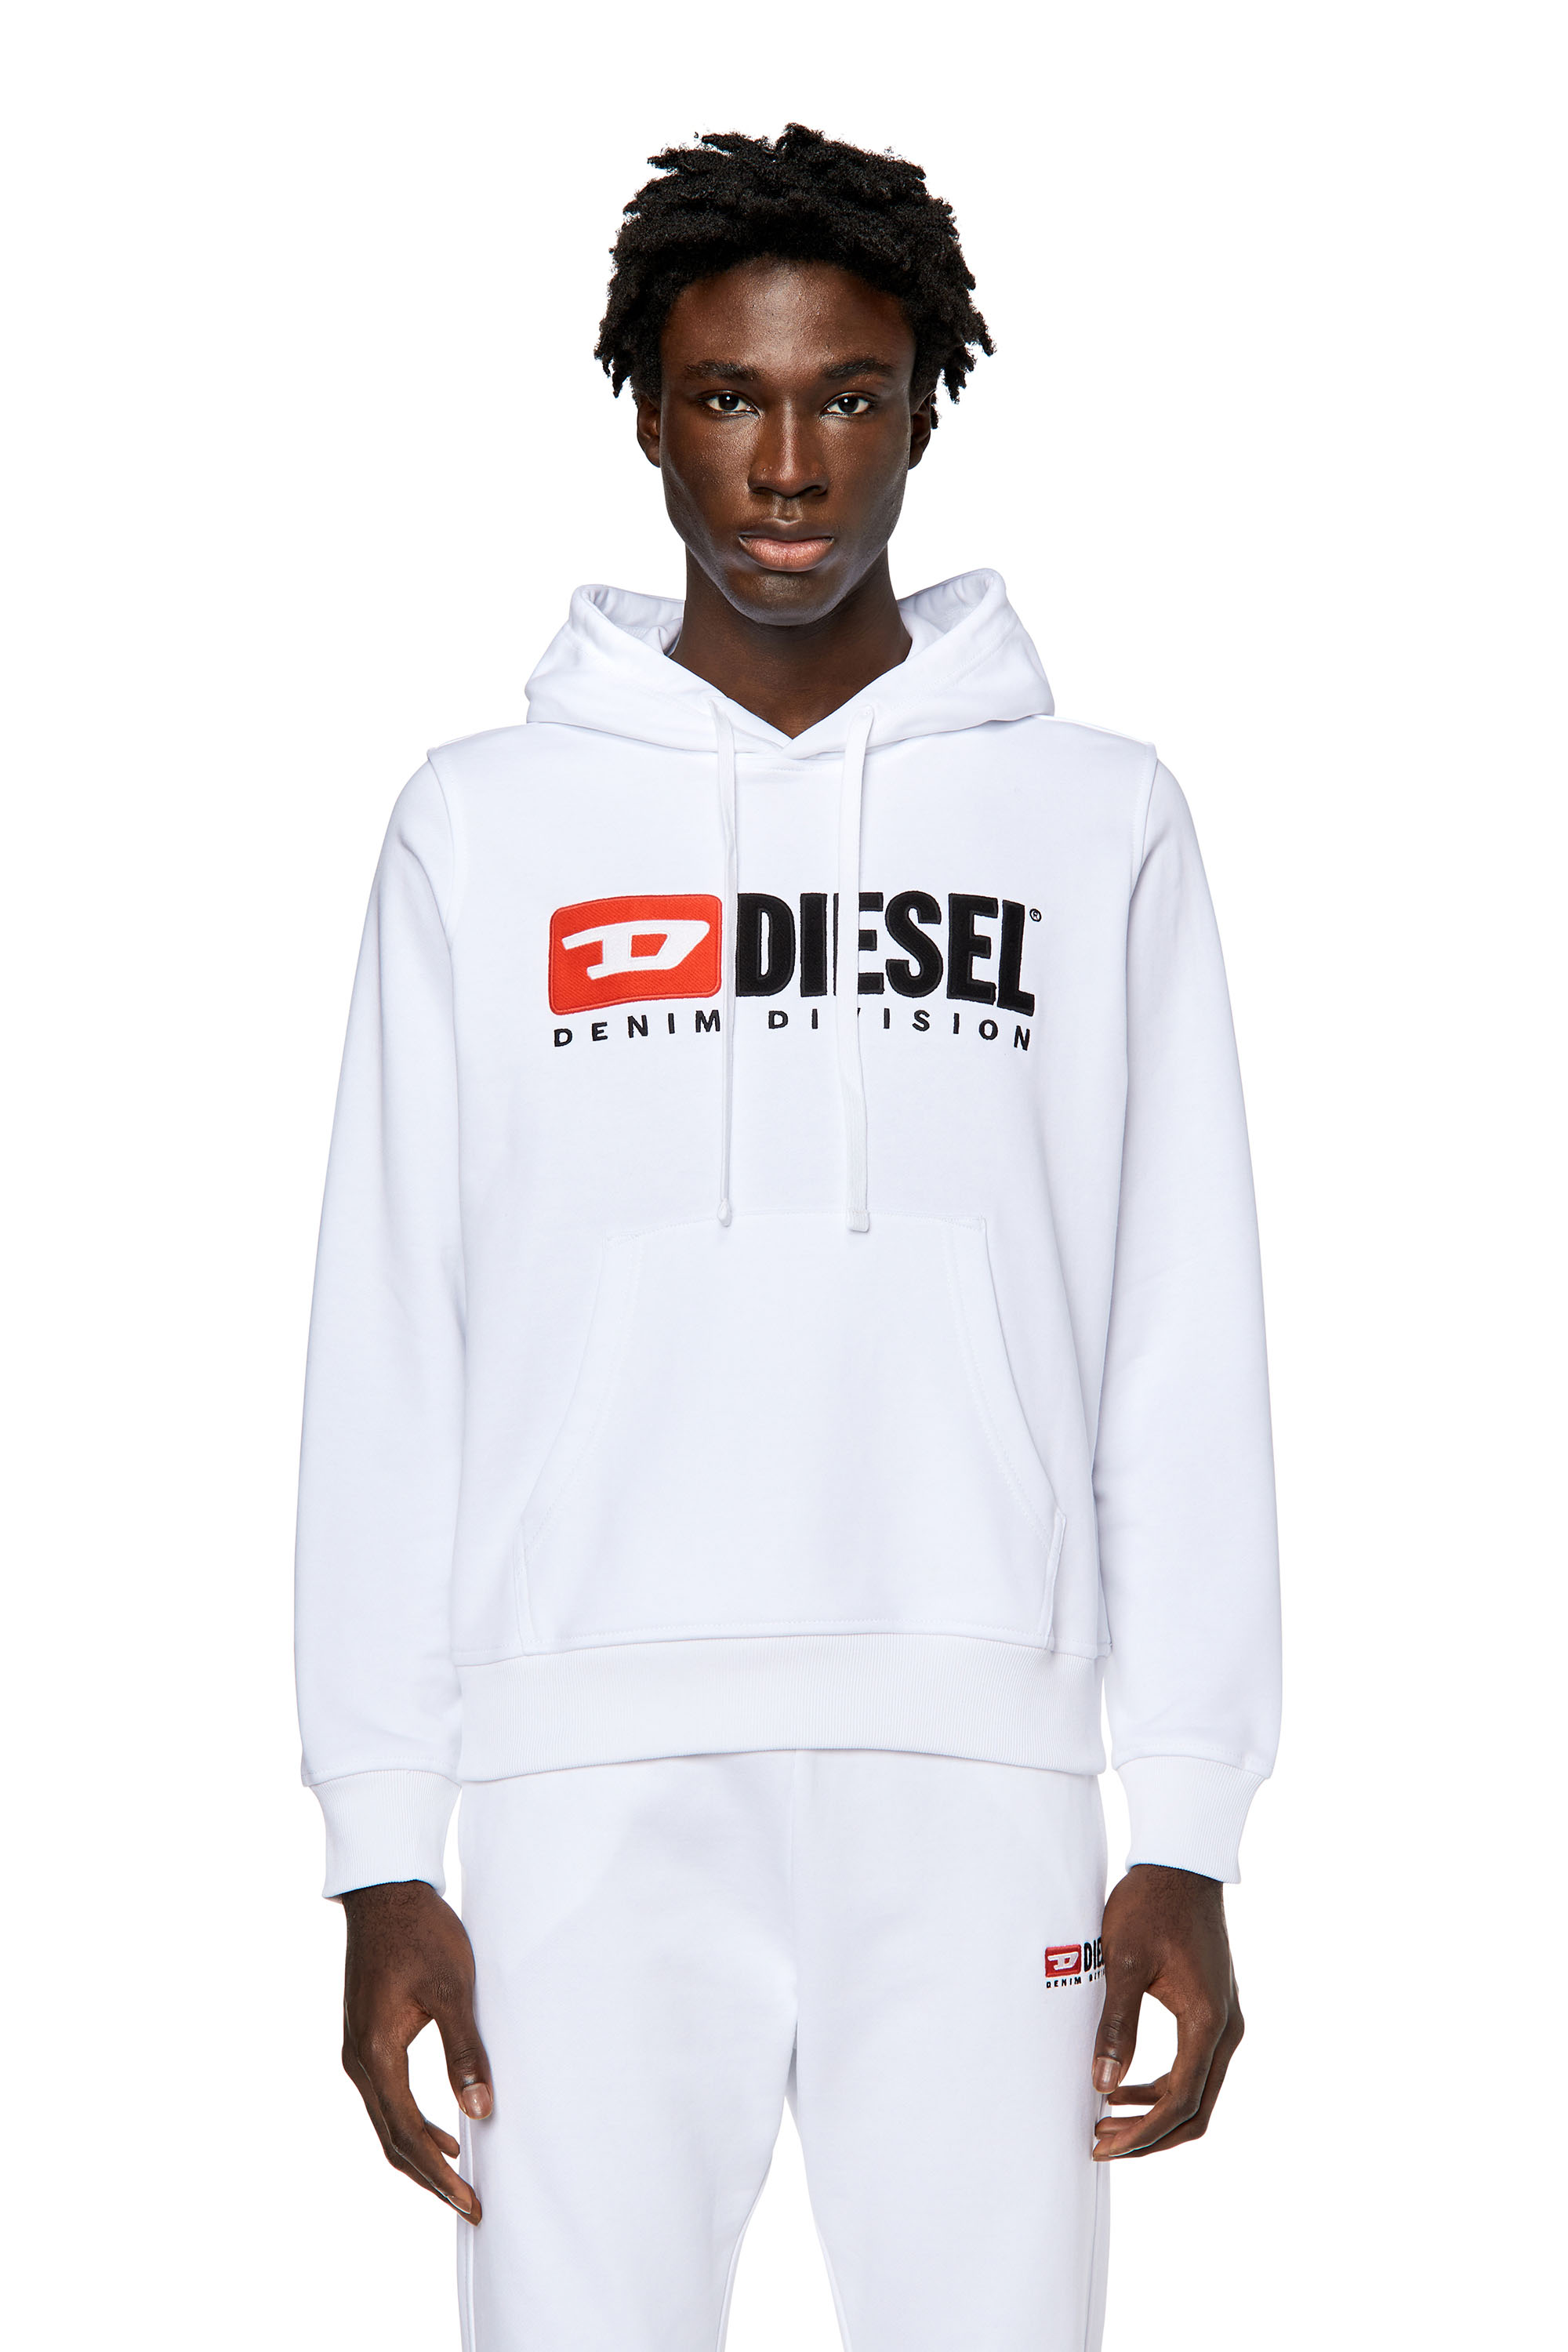 Diesel - Sweat-shirt à capuche avec logo appliqué - Pull Cotton - Homme - Blanc